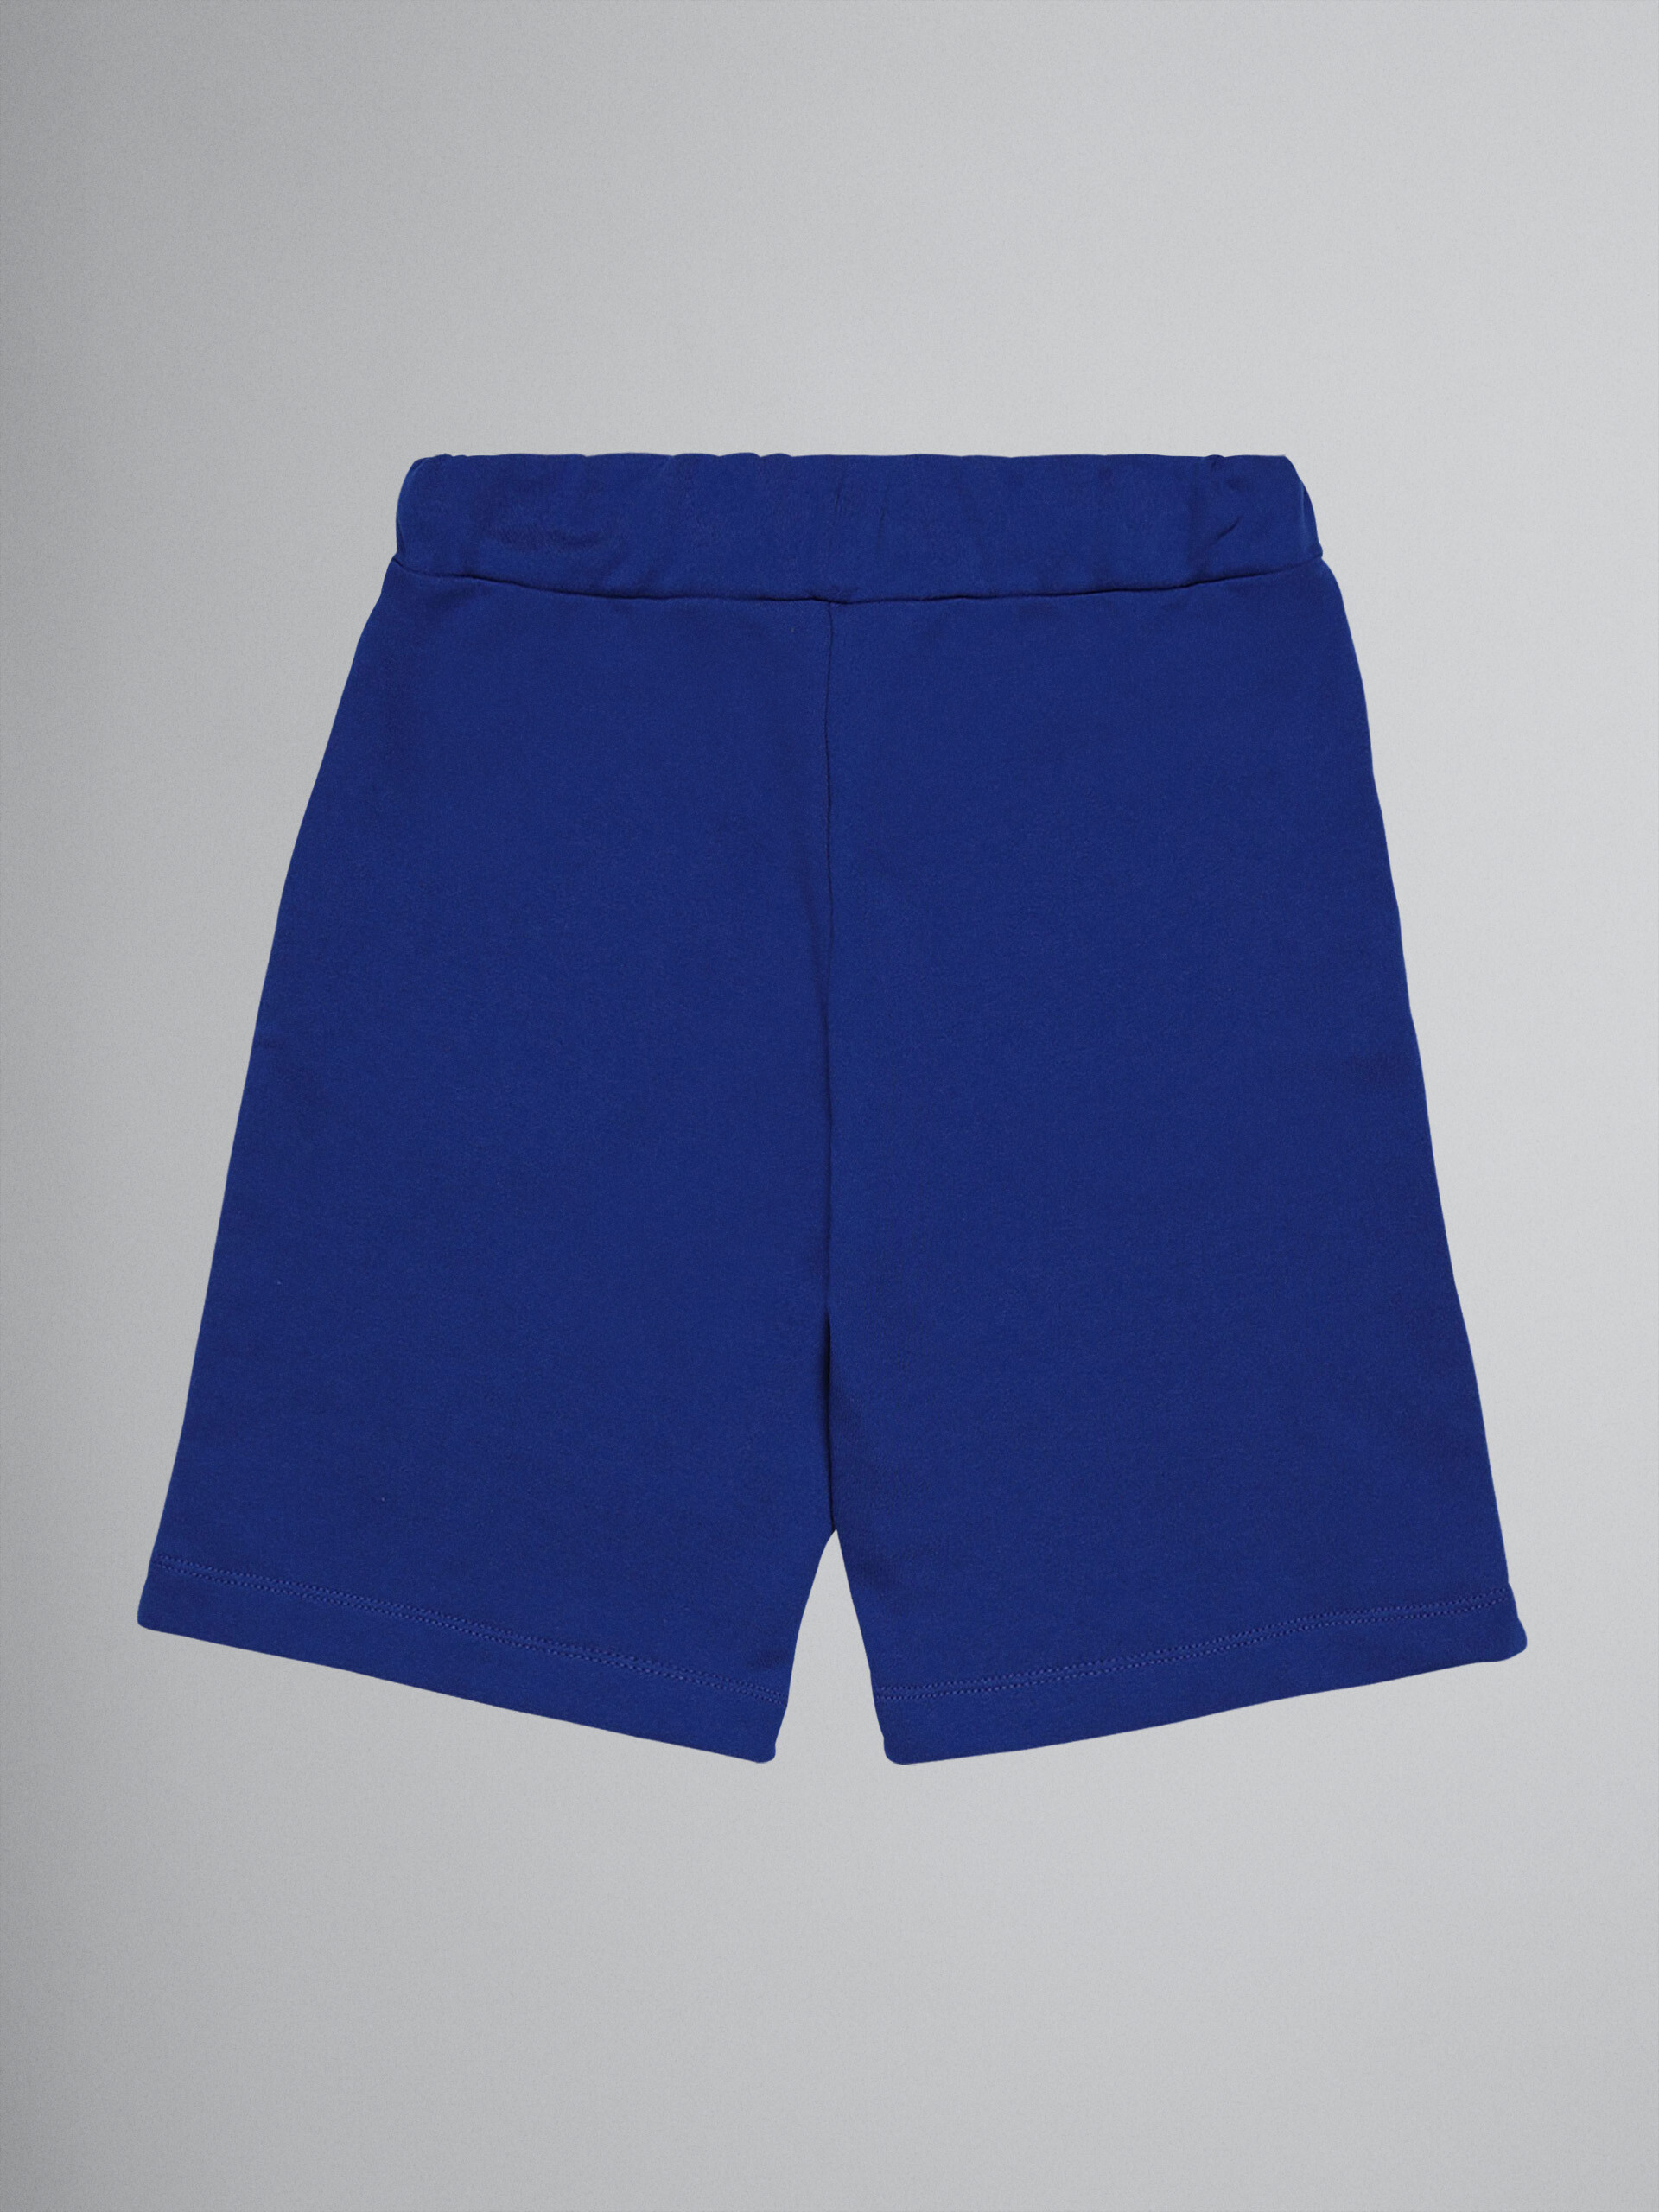 Pantalones de jogging sudadera cortos de algodón azul con maxilogotipo - Pantalones - Image 2